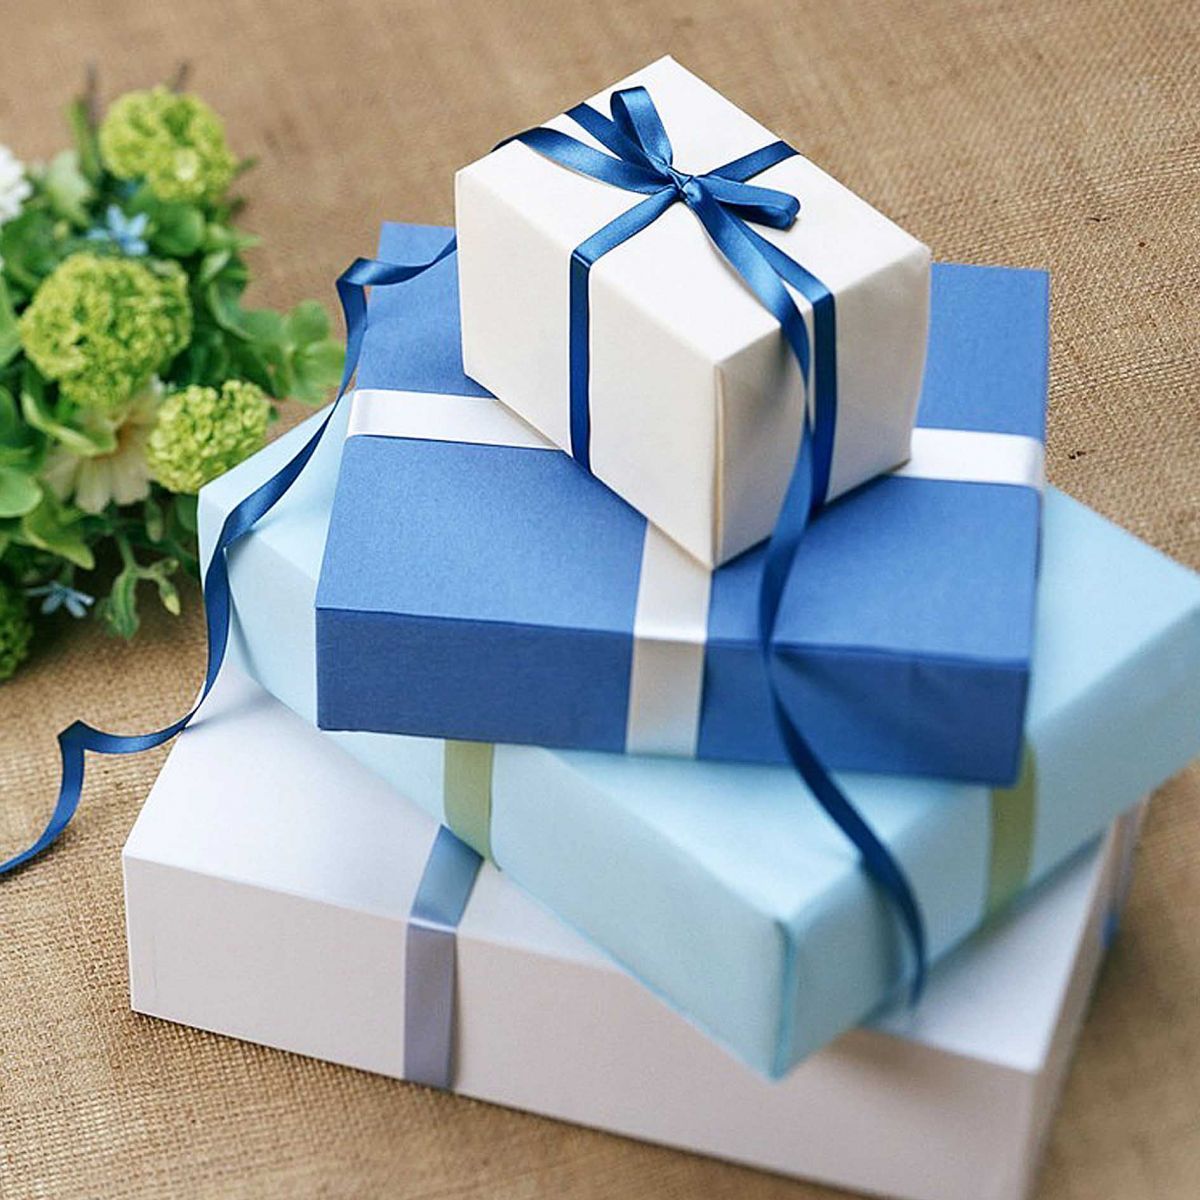 Должны ли подарки быть дорогими? Правильно ли дарить именно дорогие подарки близким, родным и друзья